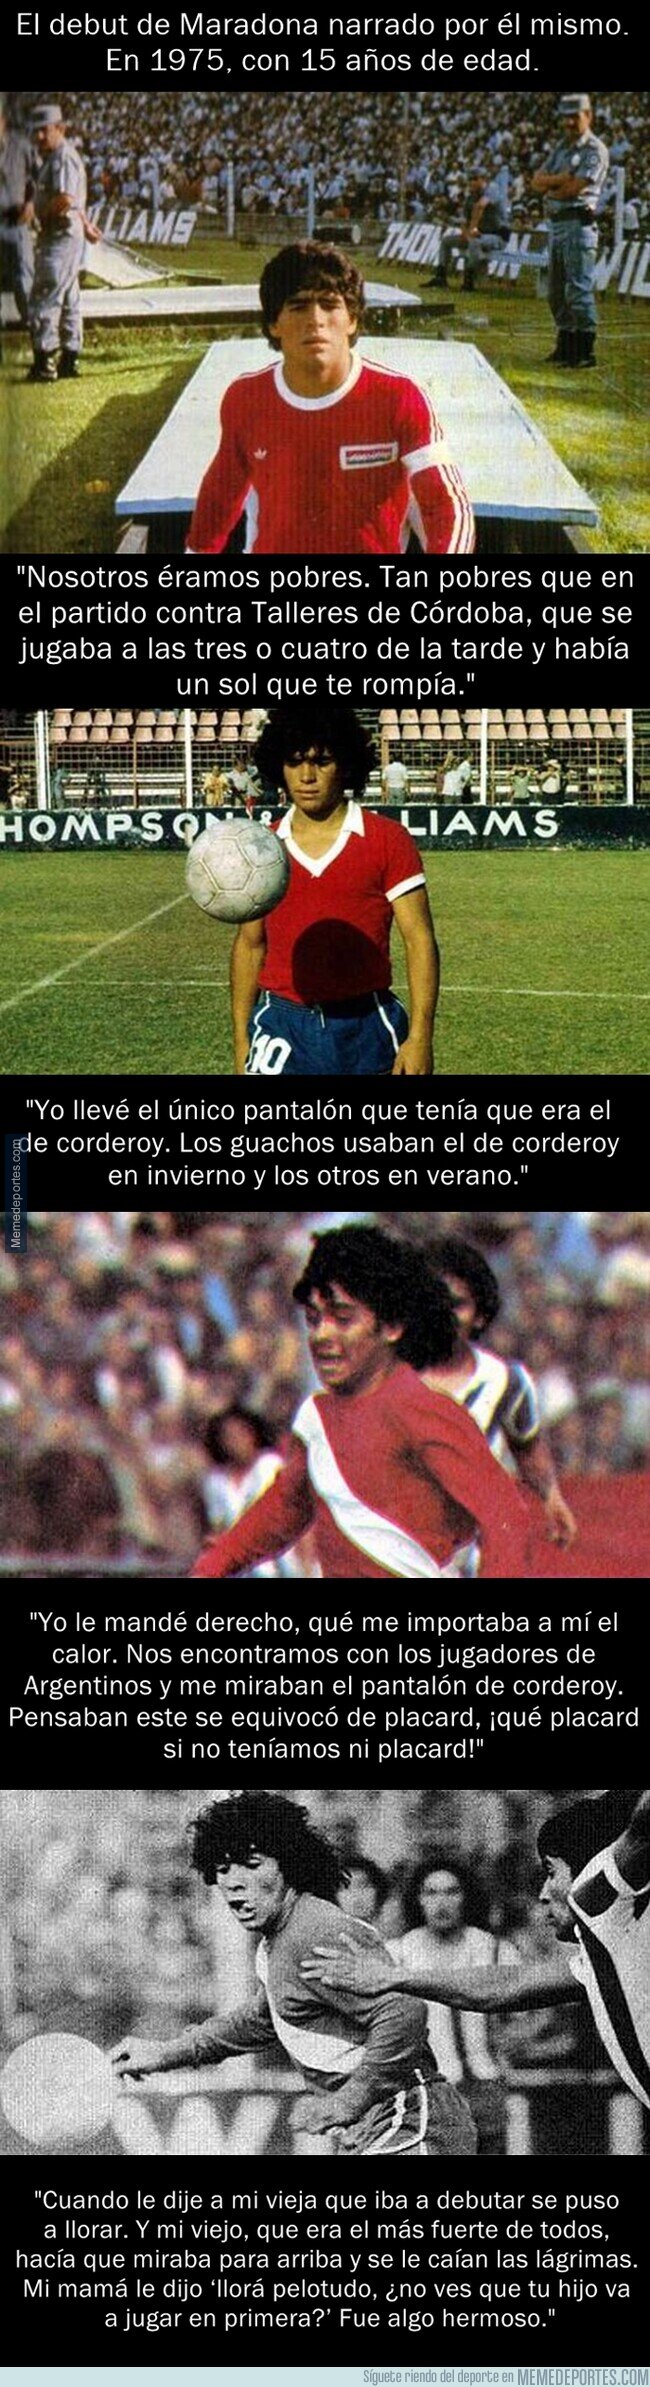 1121286 - Así fue el debut de Maradona narrado por él mismo en el año 1975 con 15 años